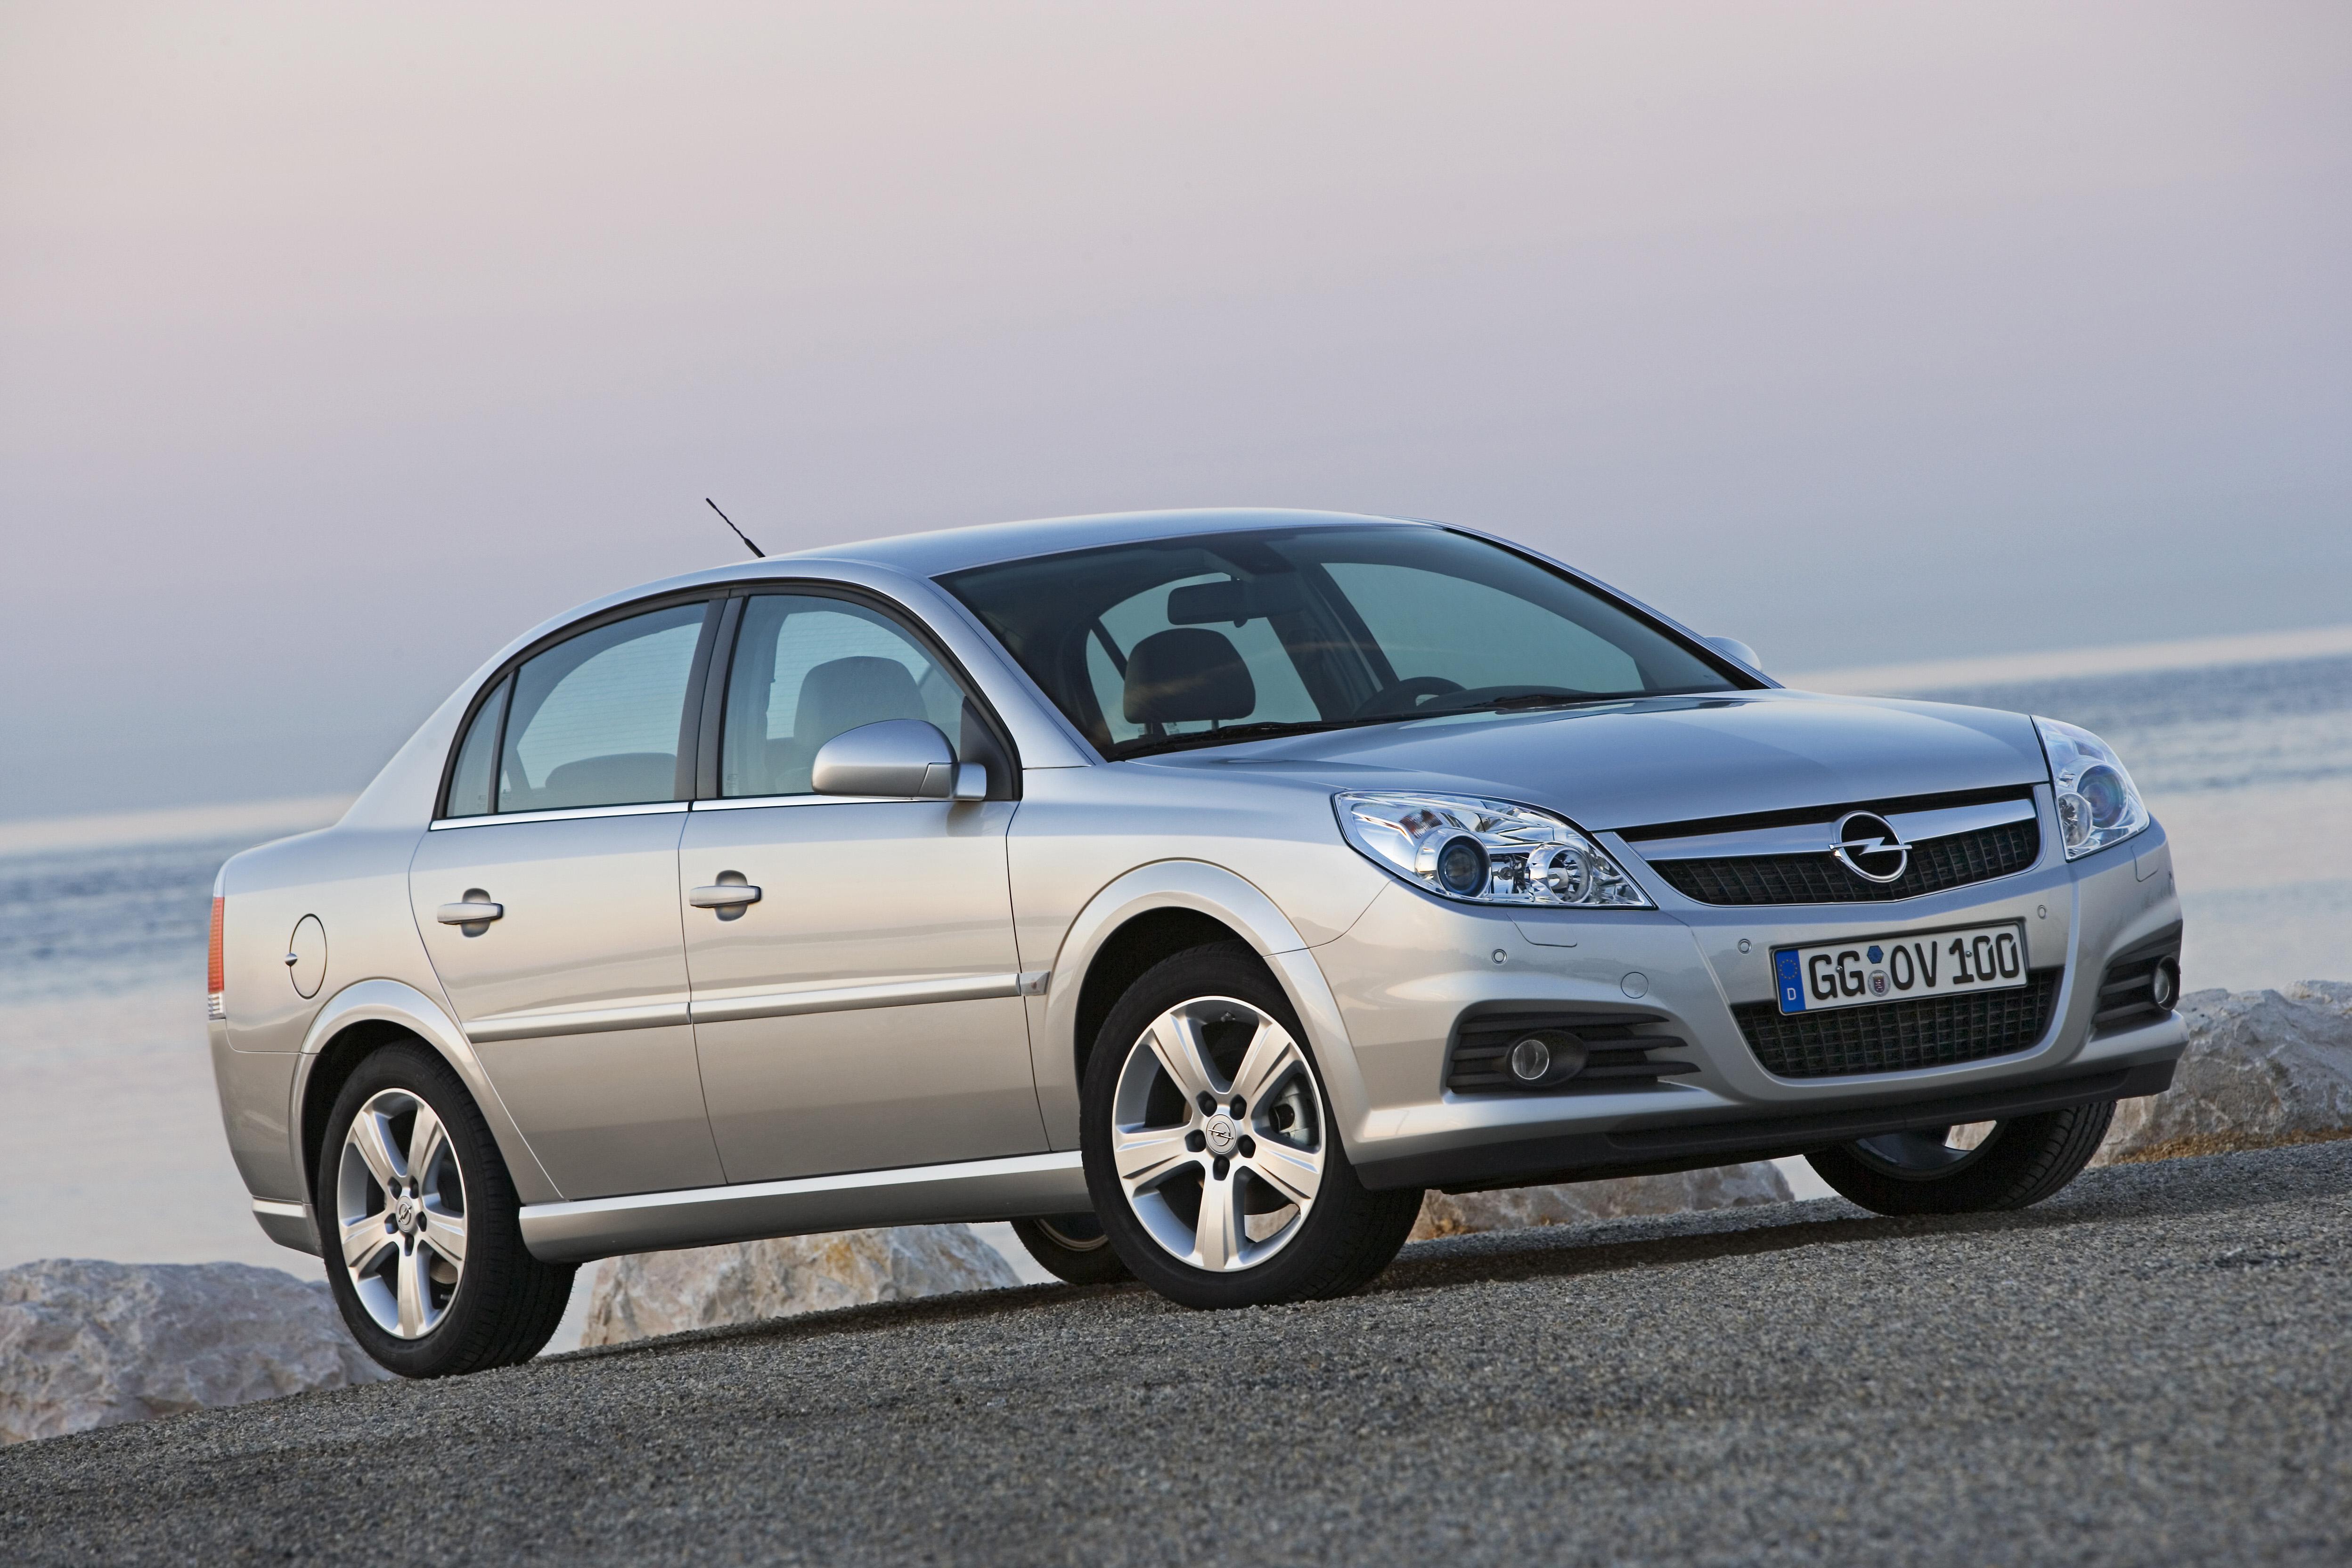 Vectras vm. Opel Vectra 2.2. Опель Вектра 1.6 2006. Опель Вектра седан 2005. Opel Vectra c 2005.